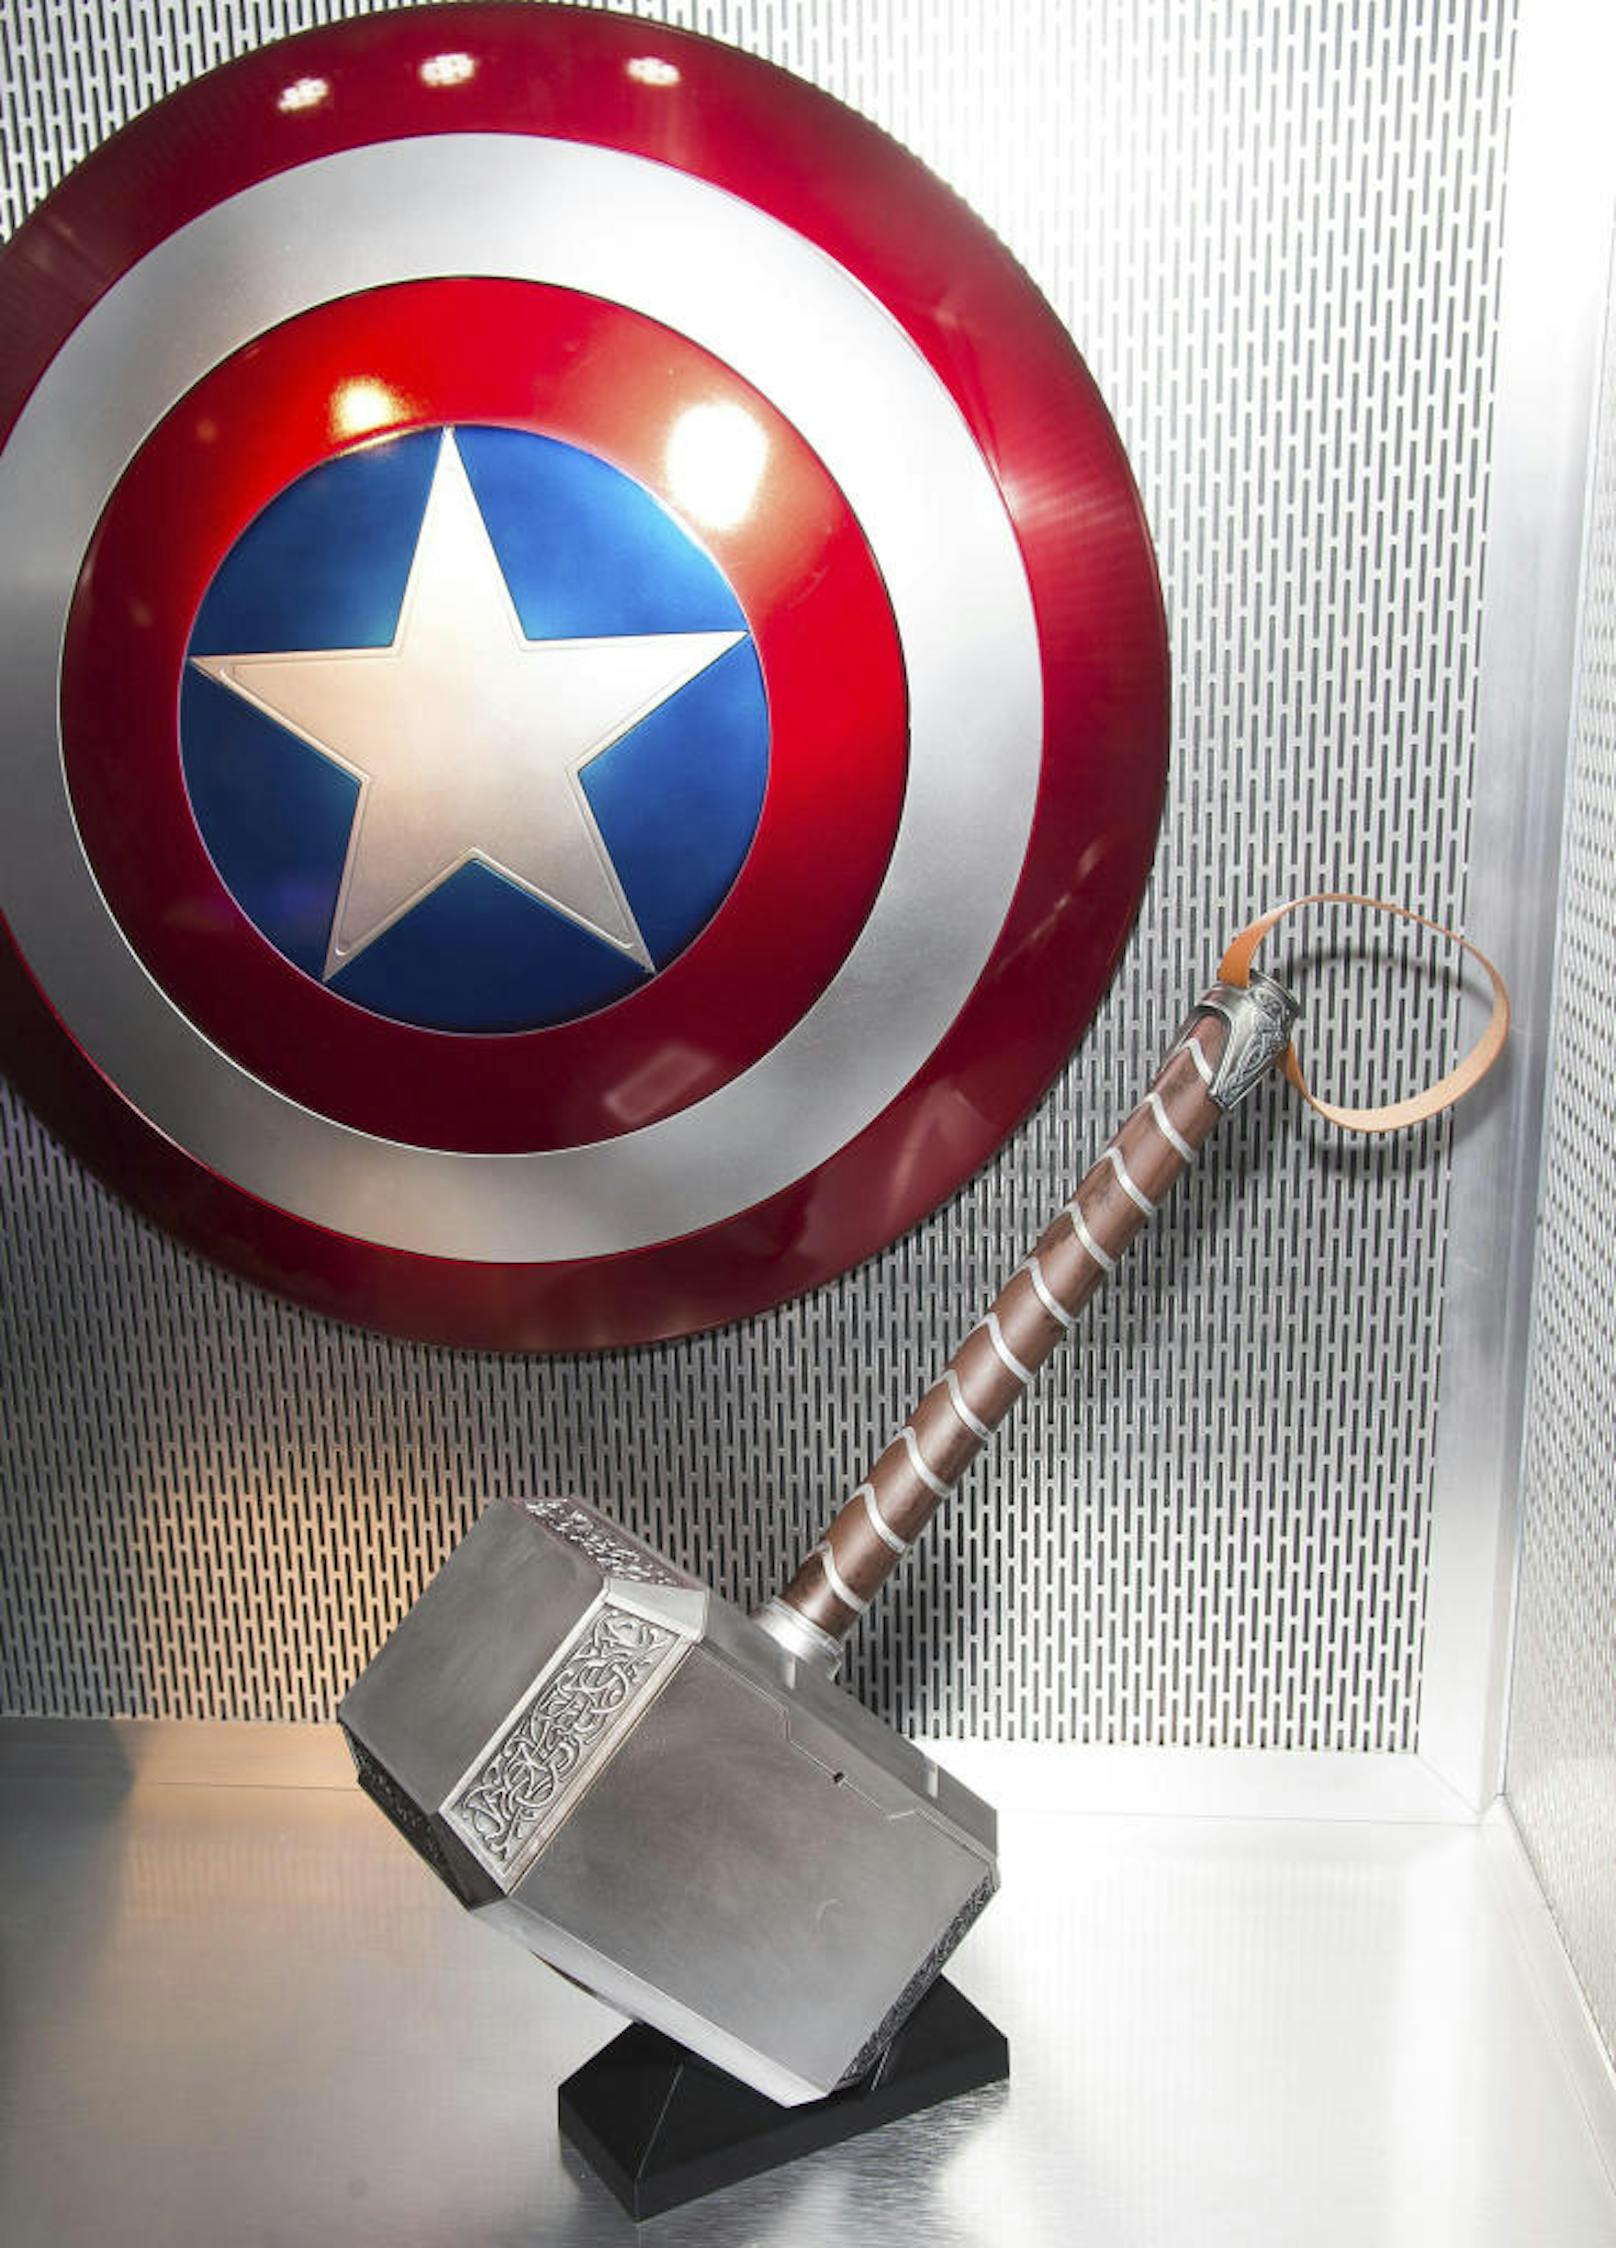 Mjolnir Hammer und Captain America Schild